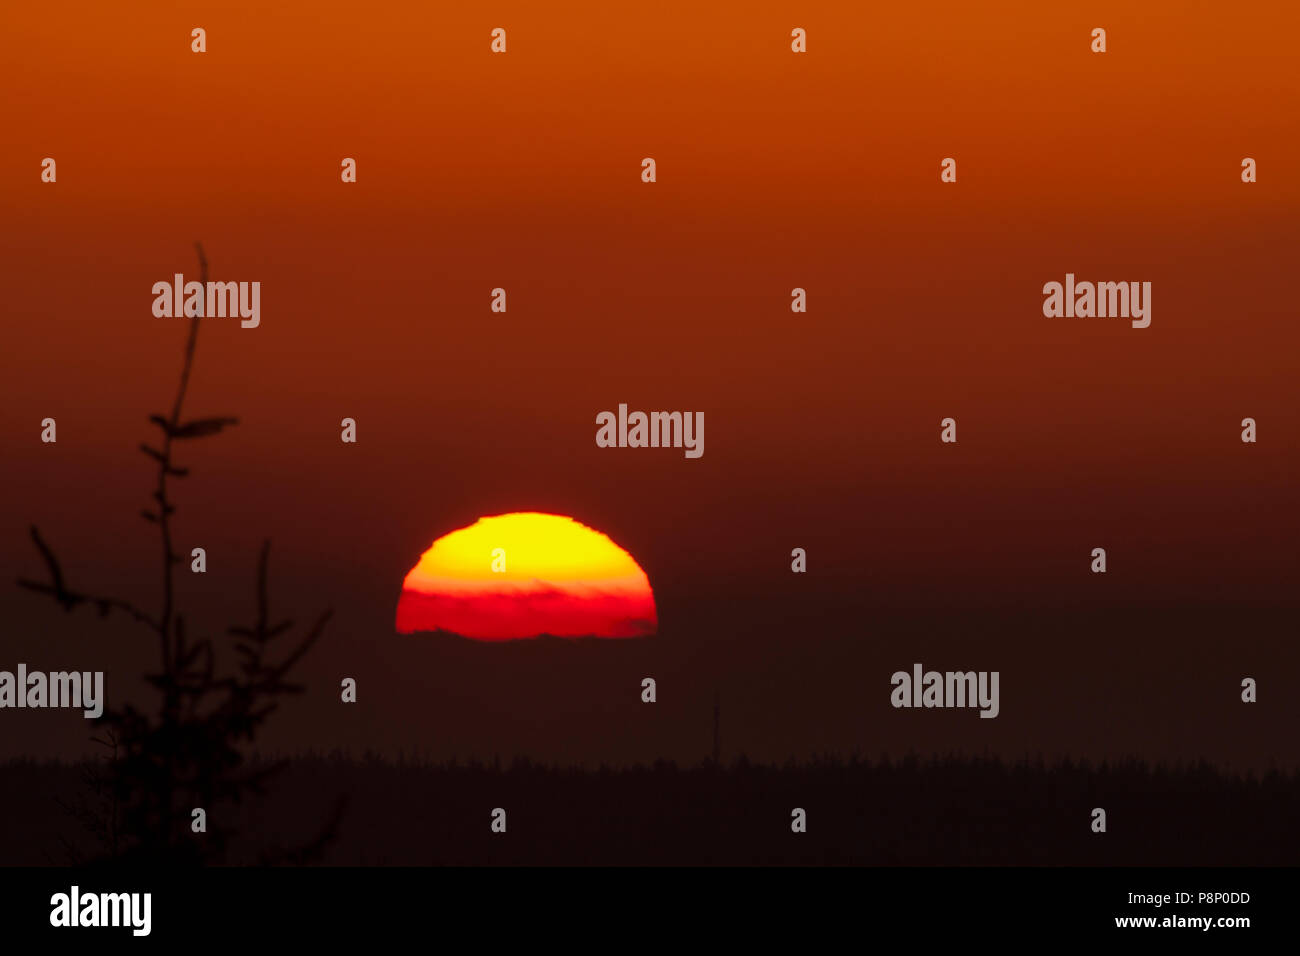 La puesta del sol parece ser aplanadas, como resultado de la flexión de los rayos de sol en este caso amplificado por la presencia de cenizas volcánicas en la atmósfera Foto de stock